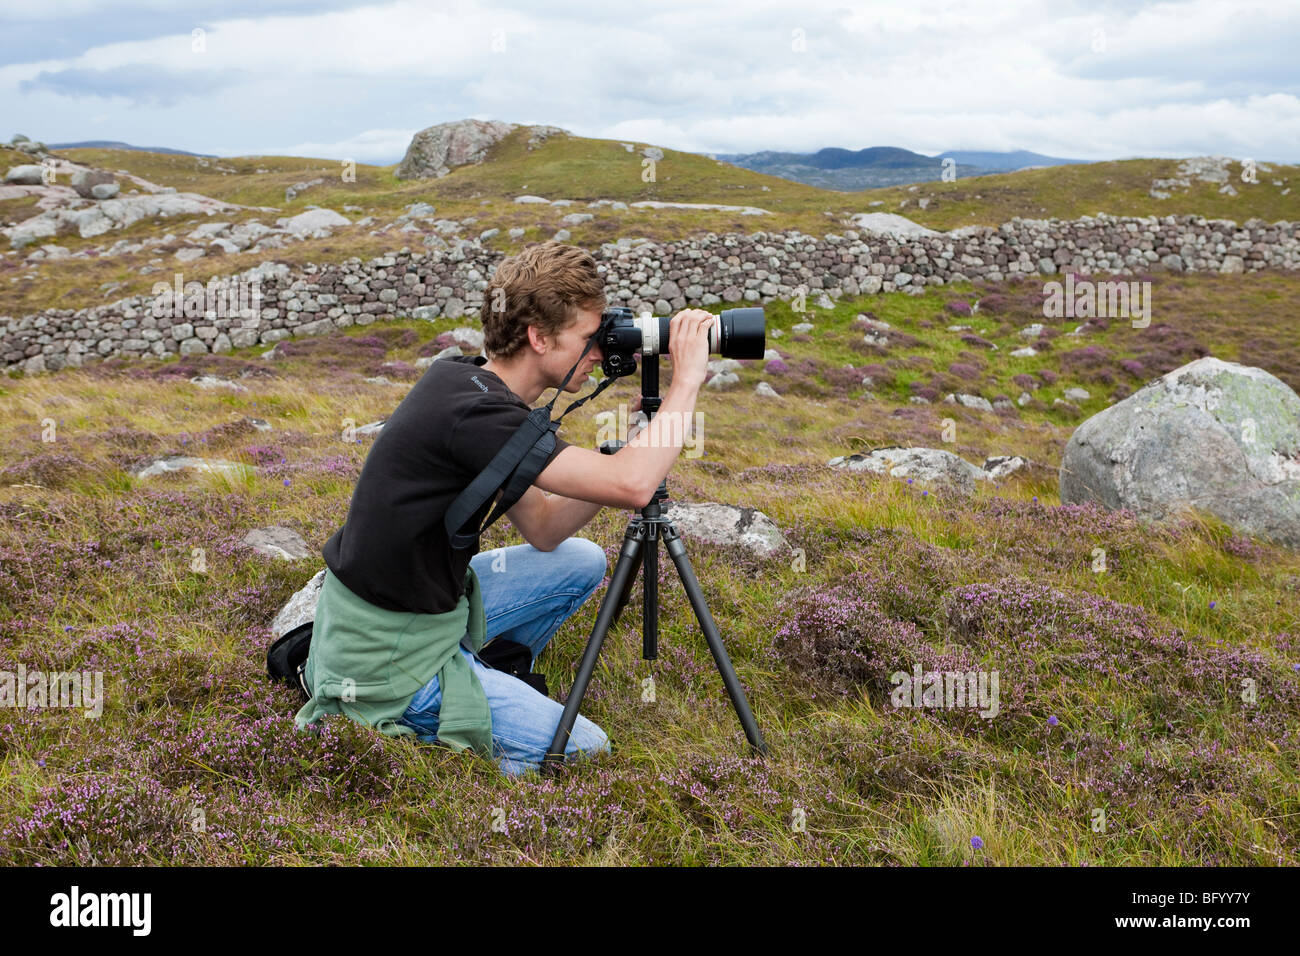 Collaboratore di Alamy fotografo Jonathan Dorey lavorando sulla posizione in Oldshoremore, a nord di Kinlochbervie, Highland, Scozia Foto Stock